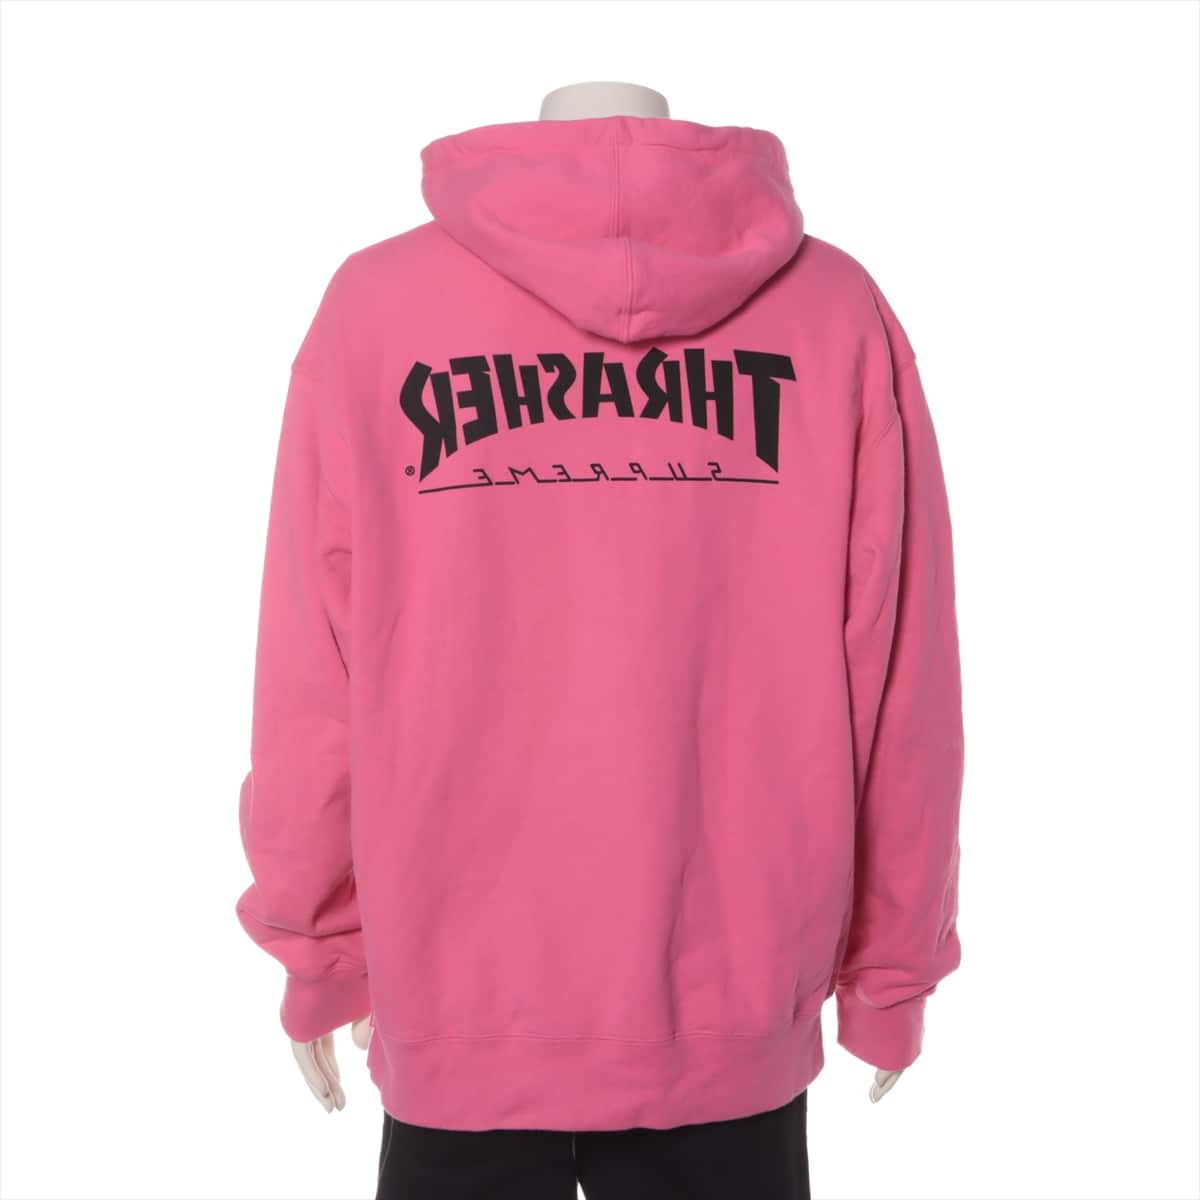 シュプリーム×スラッシャー 21AW コットン パーカー L メンズ ピンク  Hooded Sweatshirt